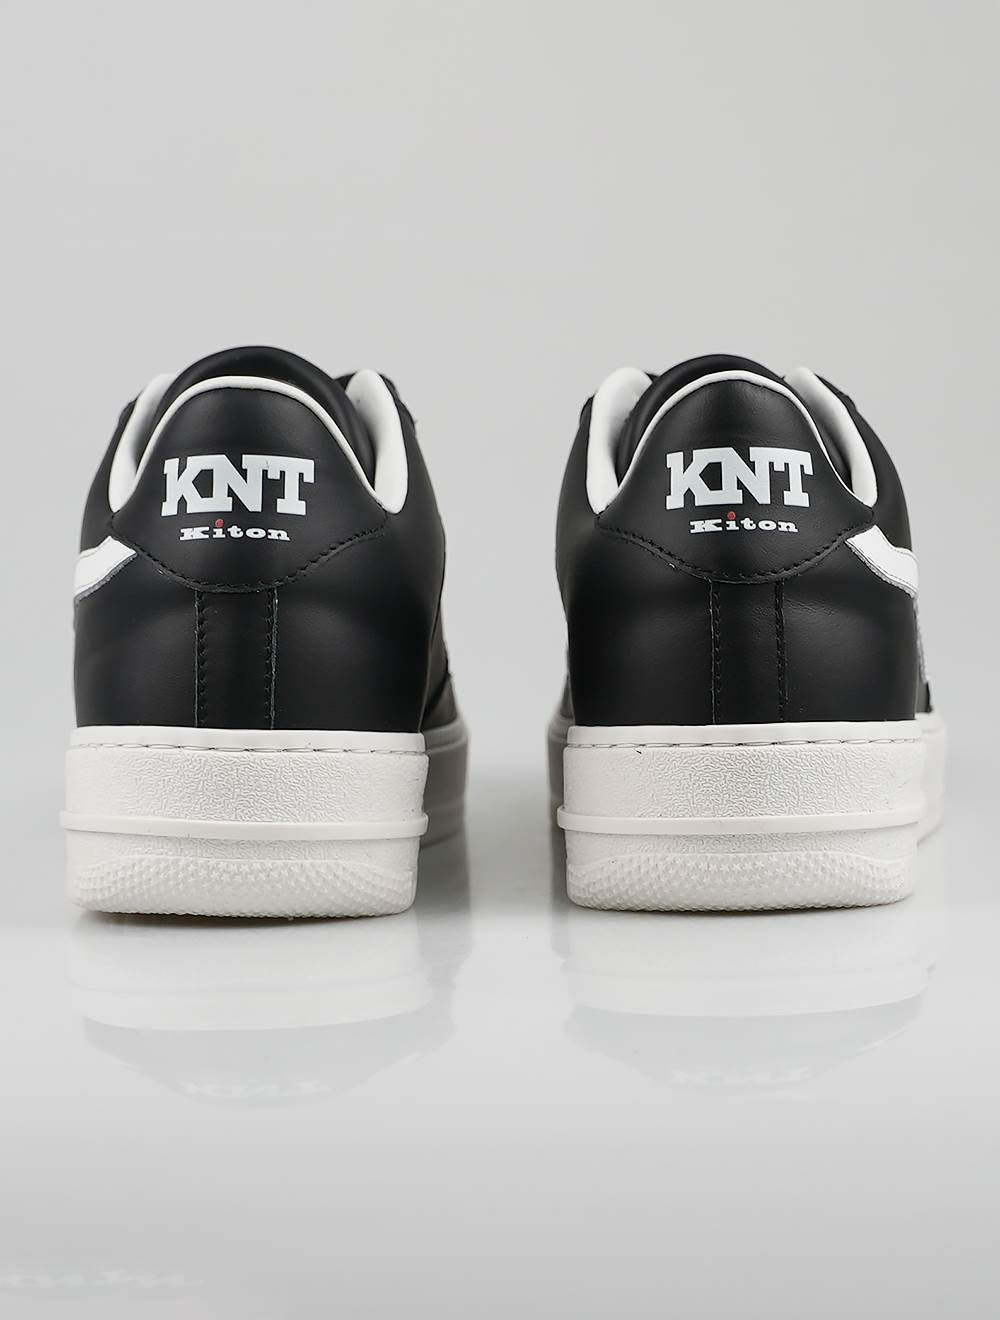 KNT Kiton حذاء رياضي من الجلد الأسود والأبيض